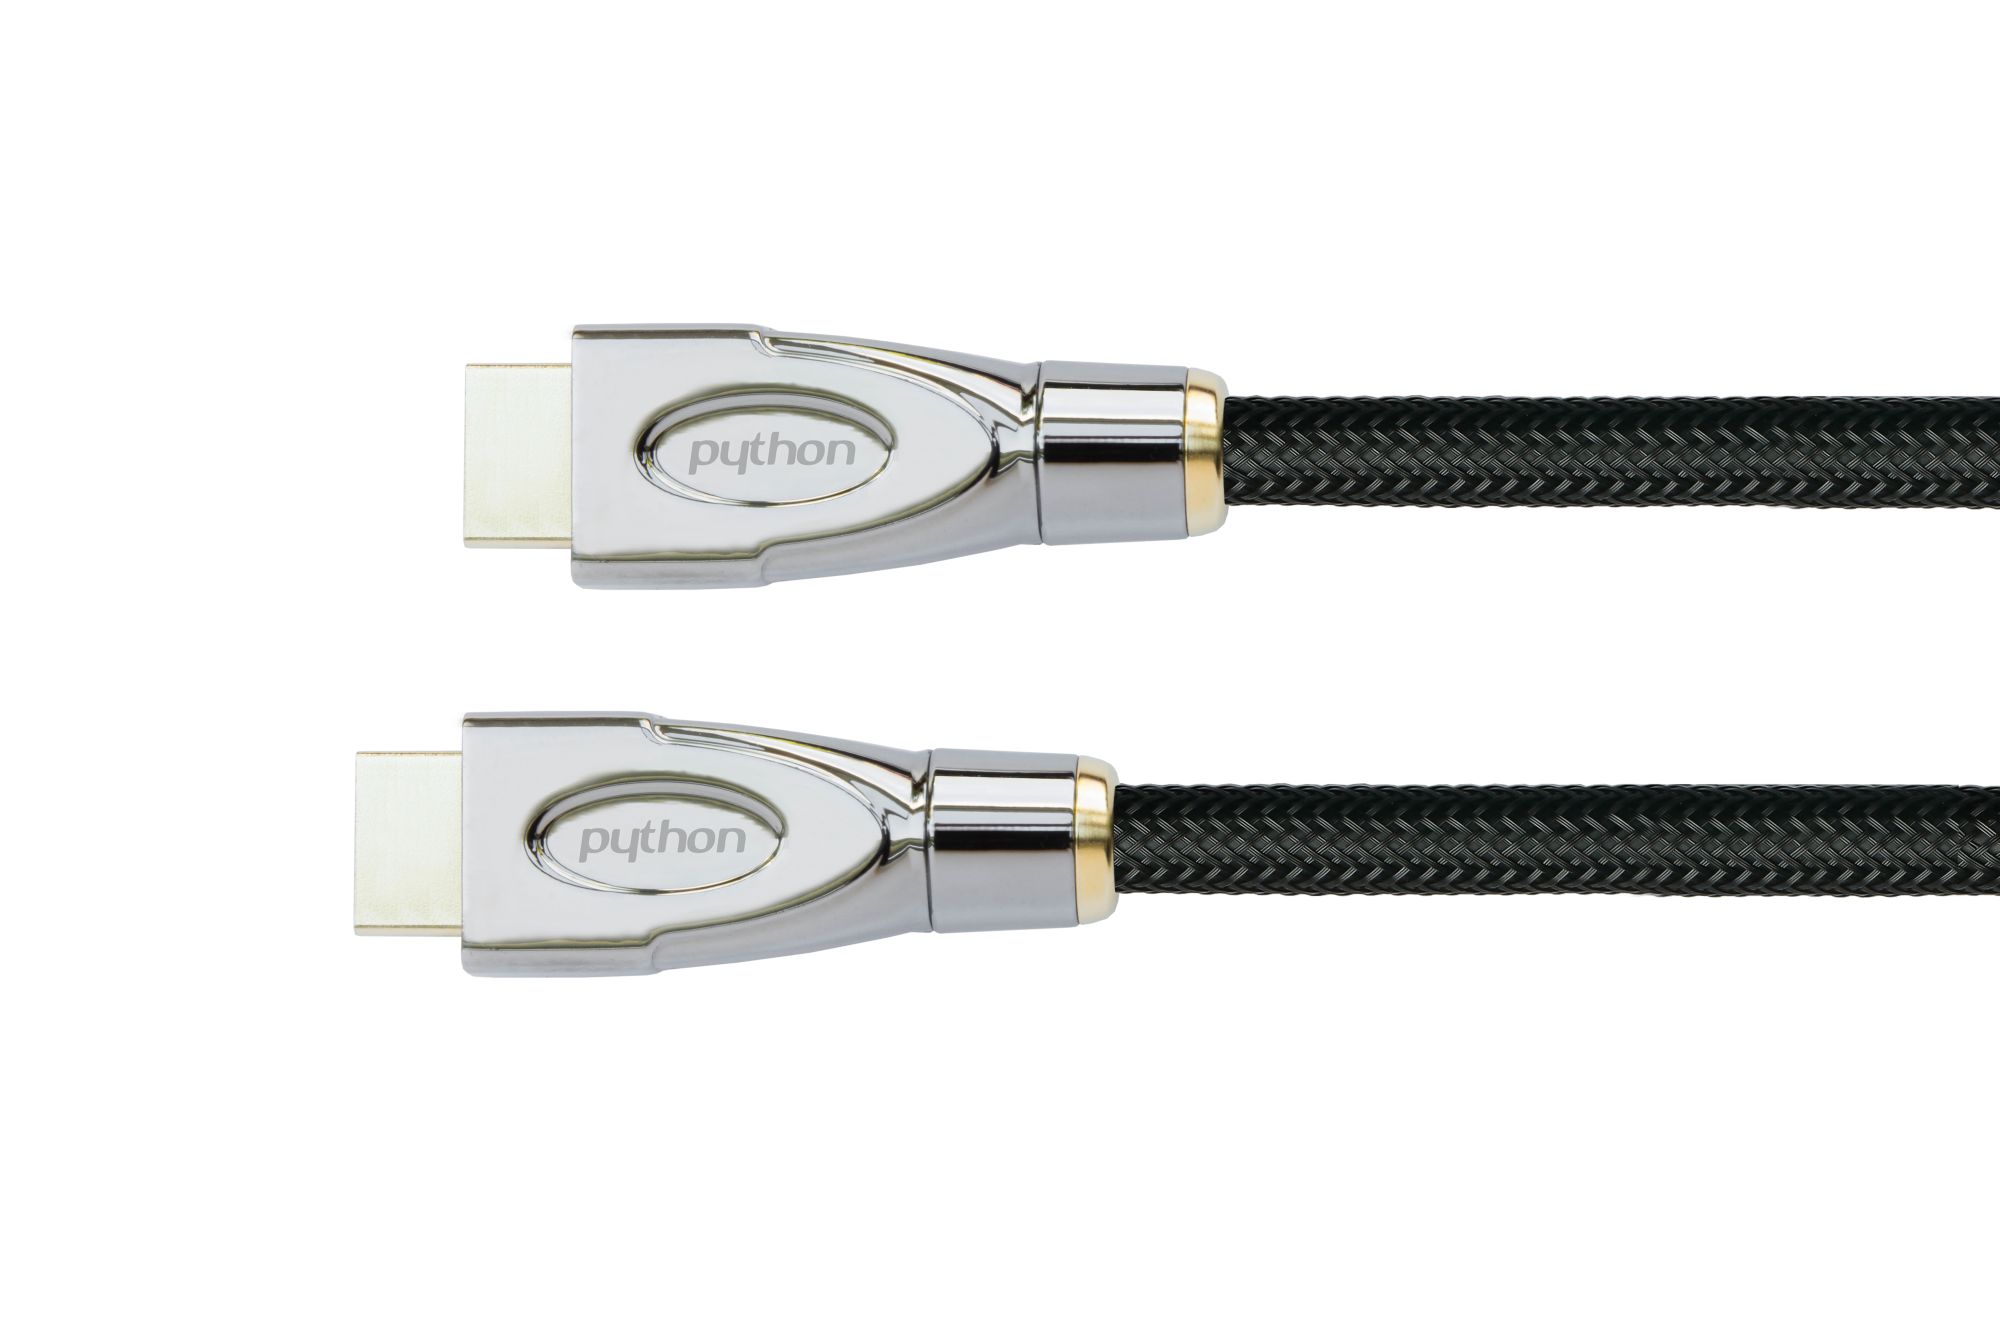 Anschlusskabel High-Speed-HDMI® mit Ethernet 4K2K/UHD, AKTIV (Redmere Chips), Nylobgefl. schwarz,30m